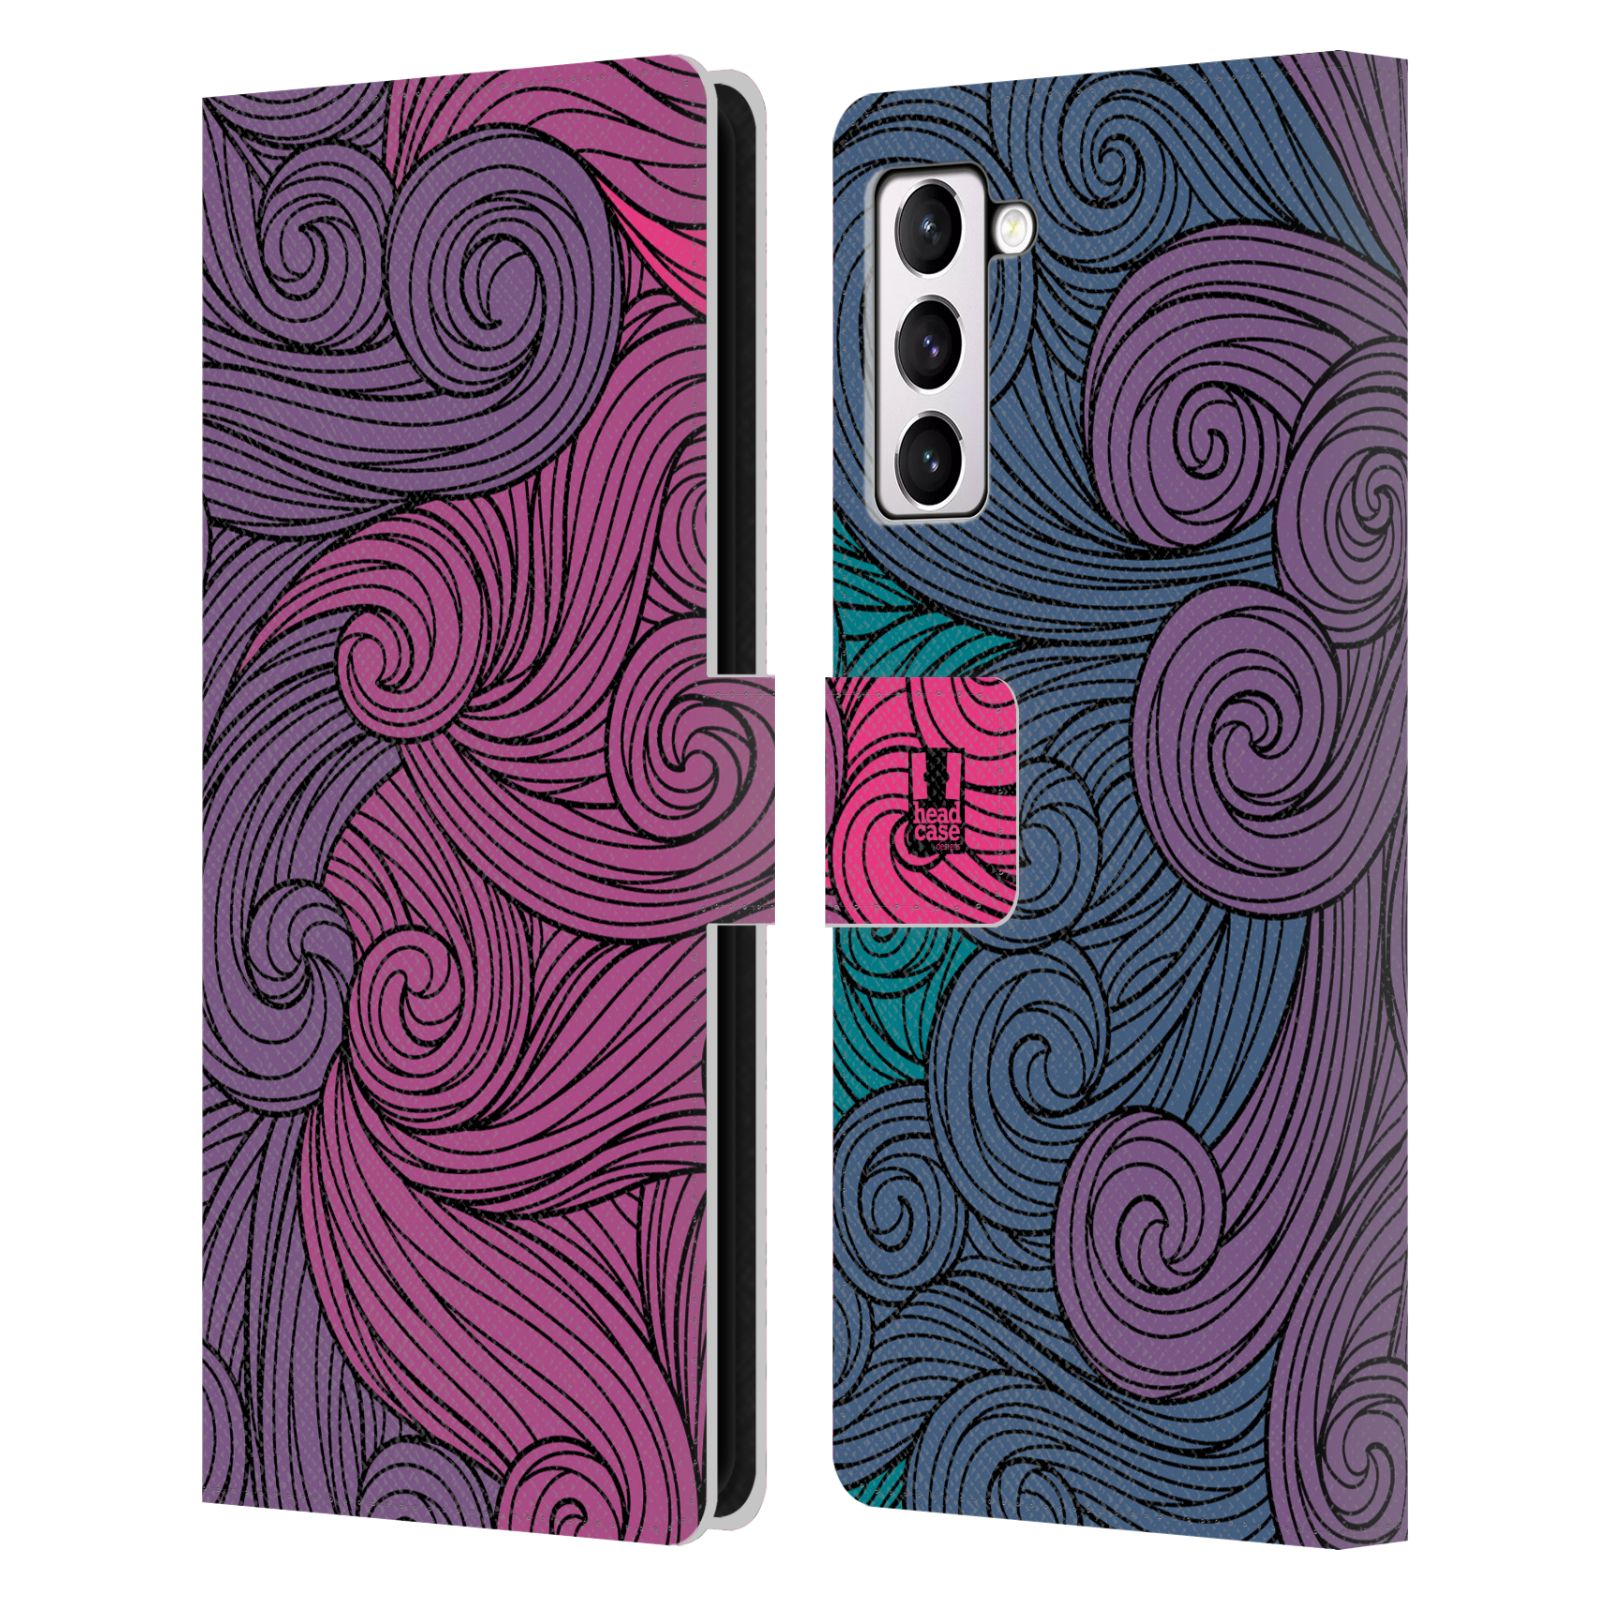 Pouzdro HEAD CASE na mobil Samsung Galaxy S21+ 5G / S21 PLUS 5G barevné vlny růžová a modrá